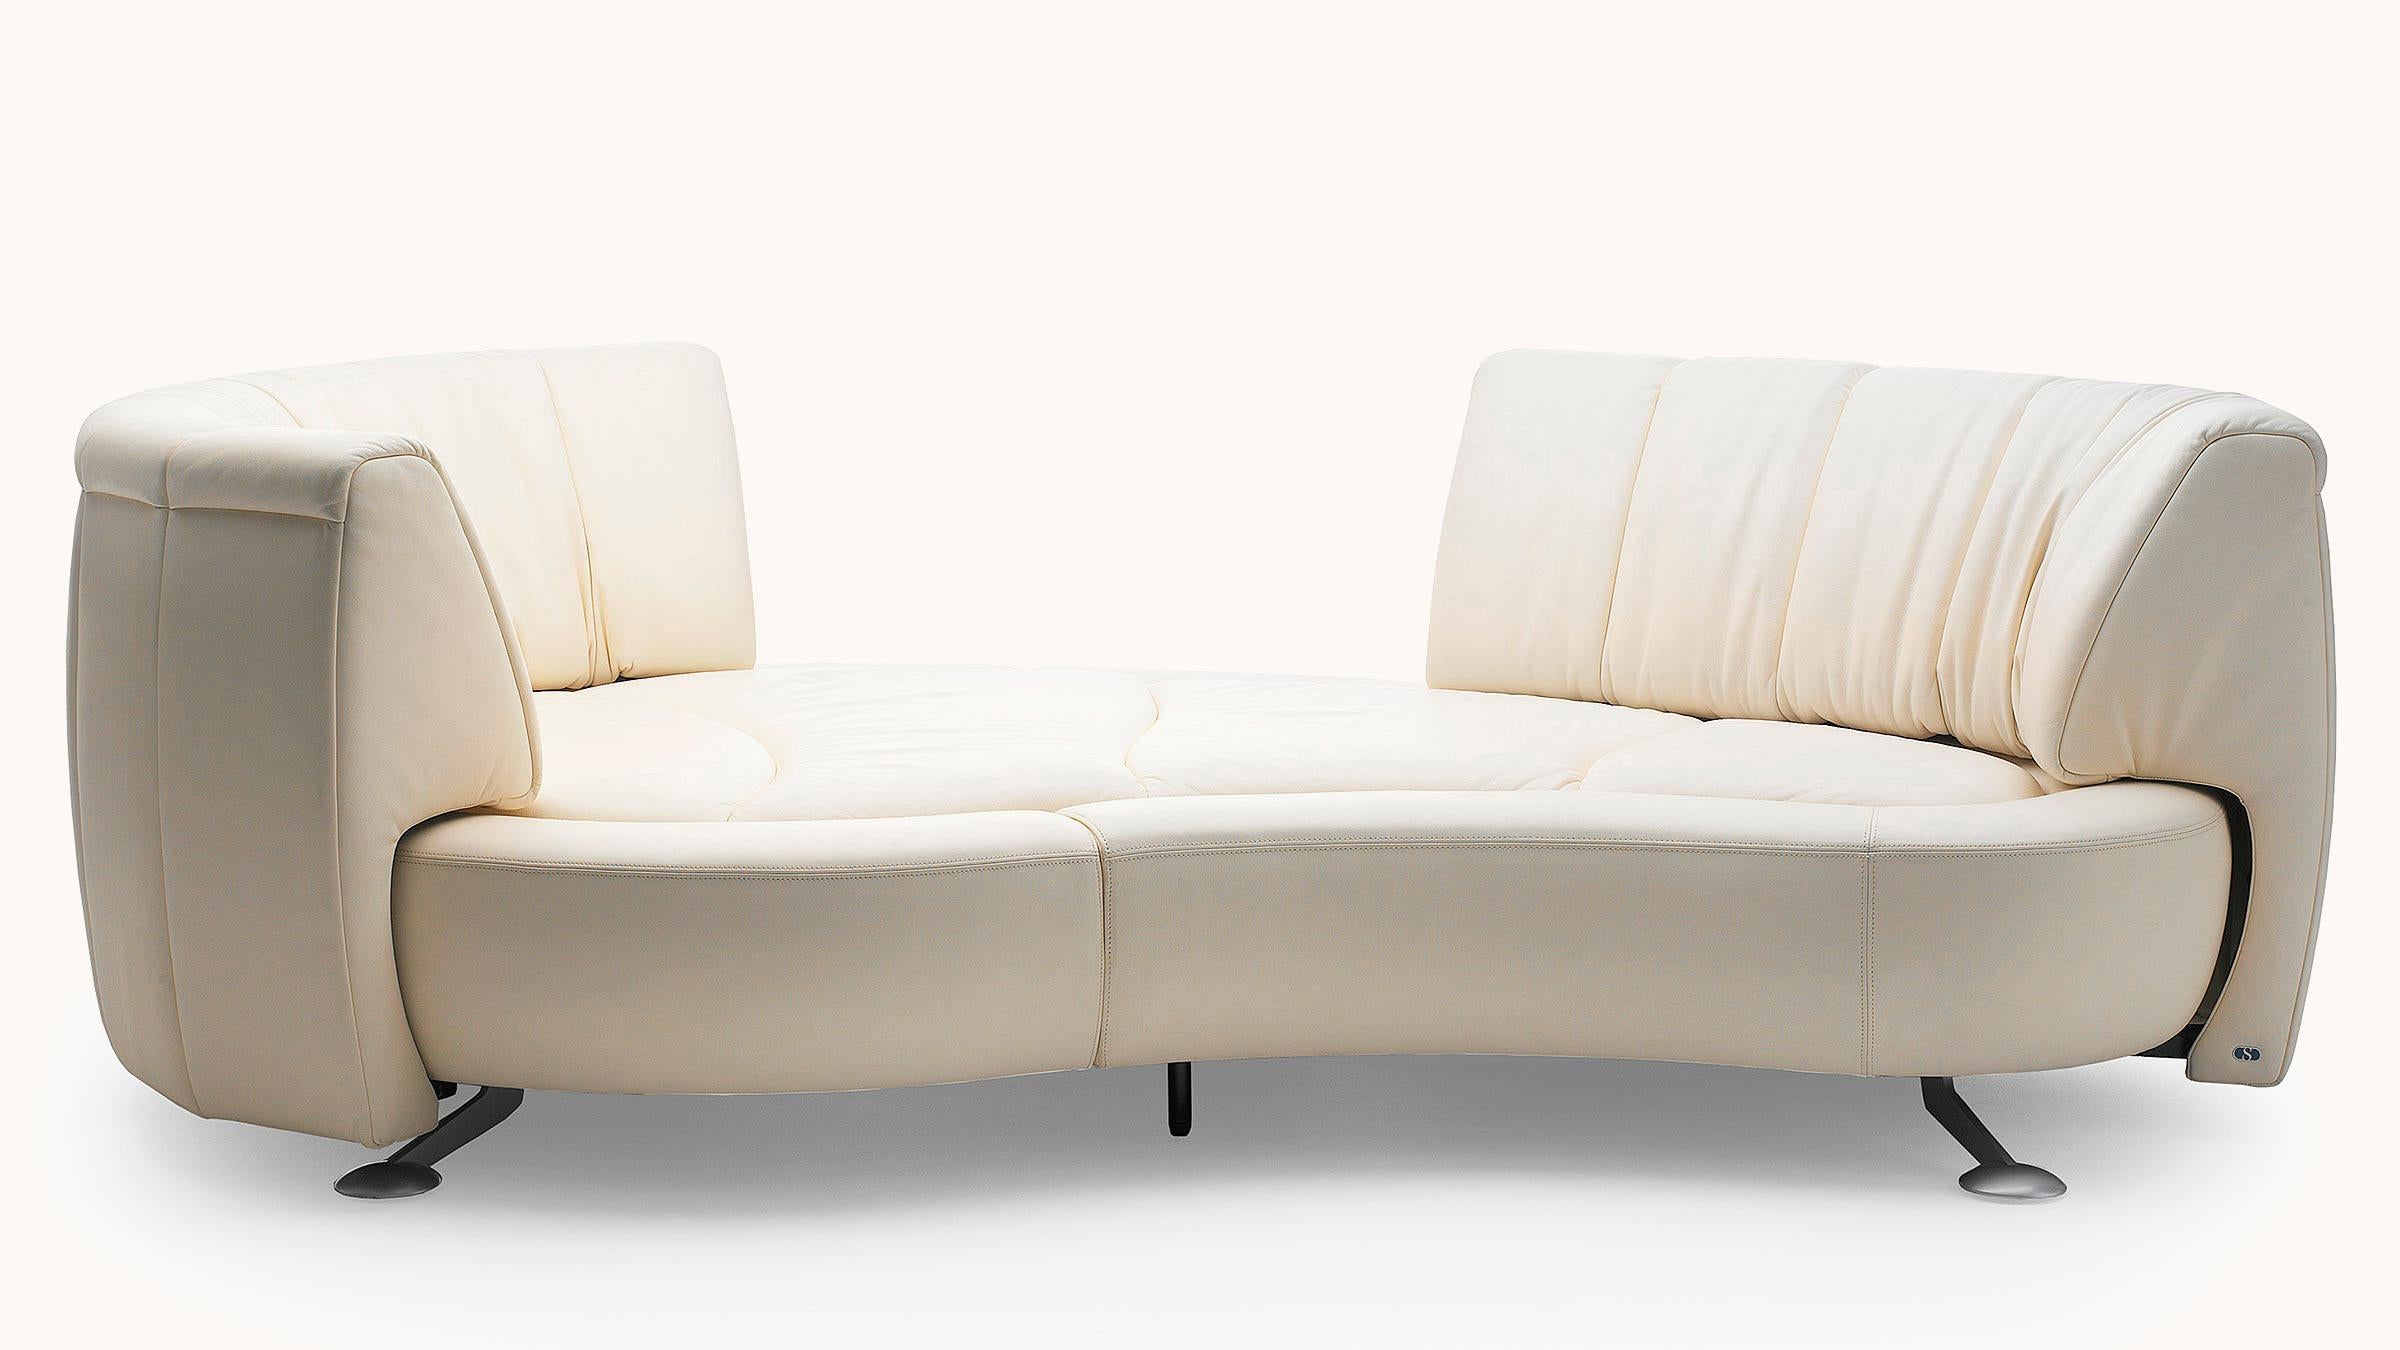 Der revolutionäre Rückenschiebemechanismus DS-164 lässt sich mit einem einzigen Handgriff von einem offenen Sofa in eine elegante Chaiselongue verwandeln, während die Rückenlehne stilvoll um 360° gedreht werden kann. Die modulare Sitzinsel, die sich